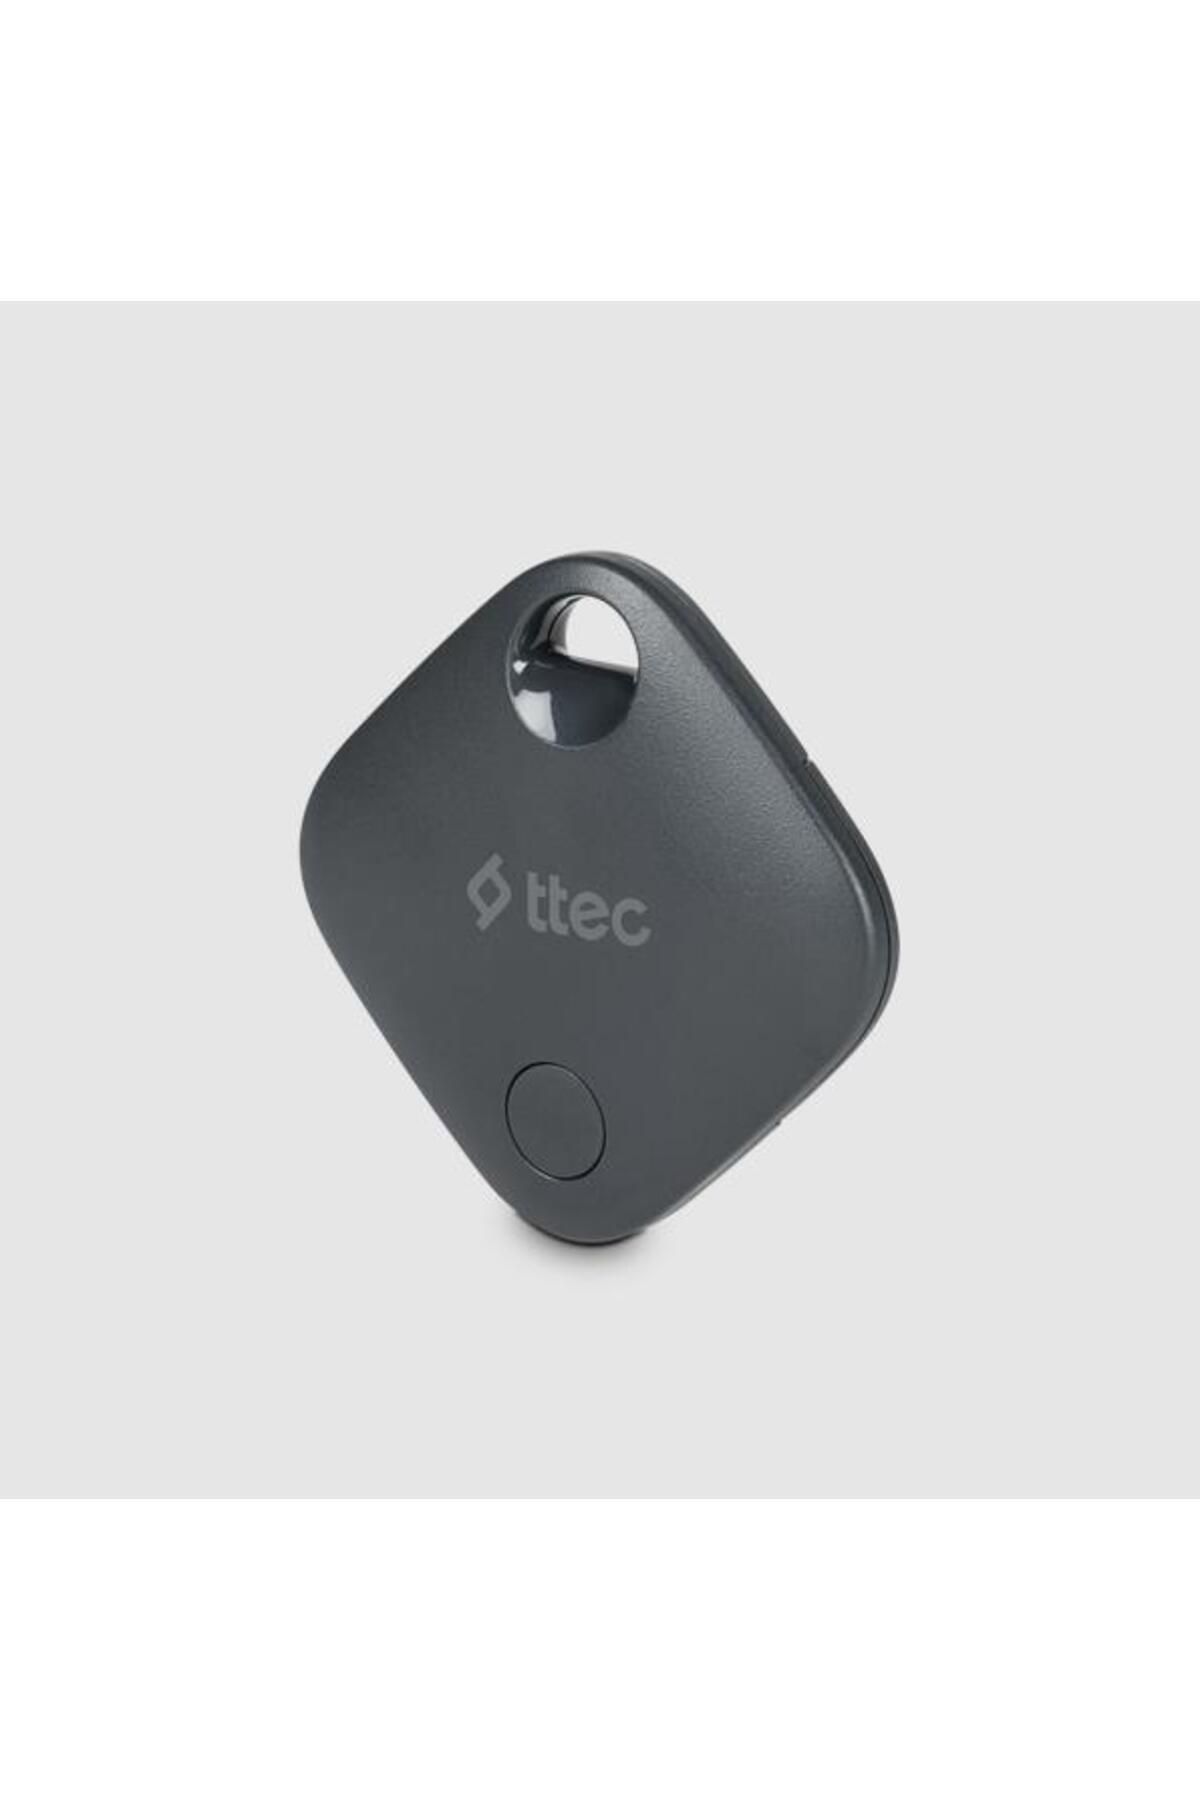 Ttec Apple Lisanslı Akıllı Takip Cihazı Air Tag Sesli Uyarı Kedi Köpek Araç Bavul Araç Takip Cihazı